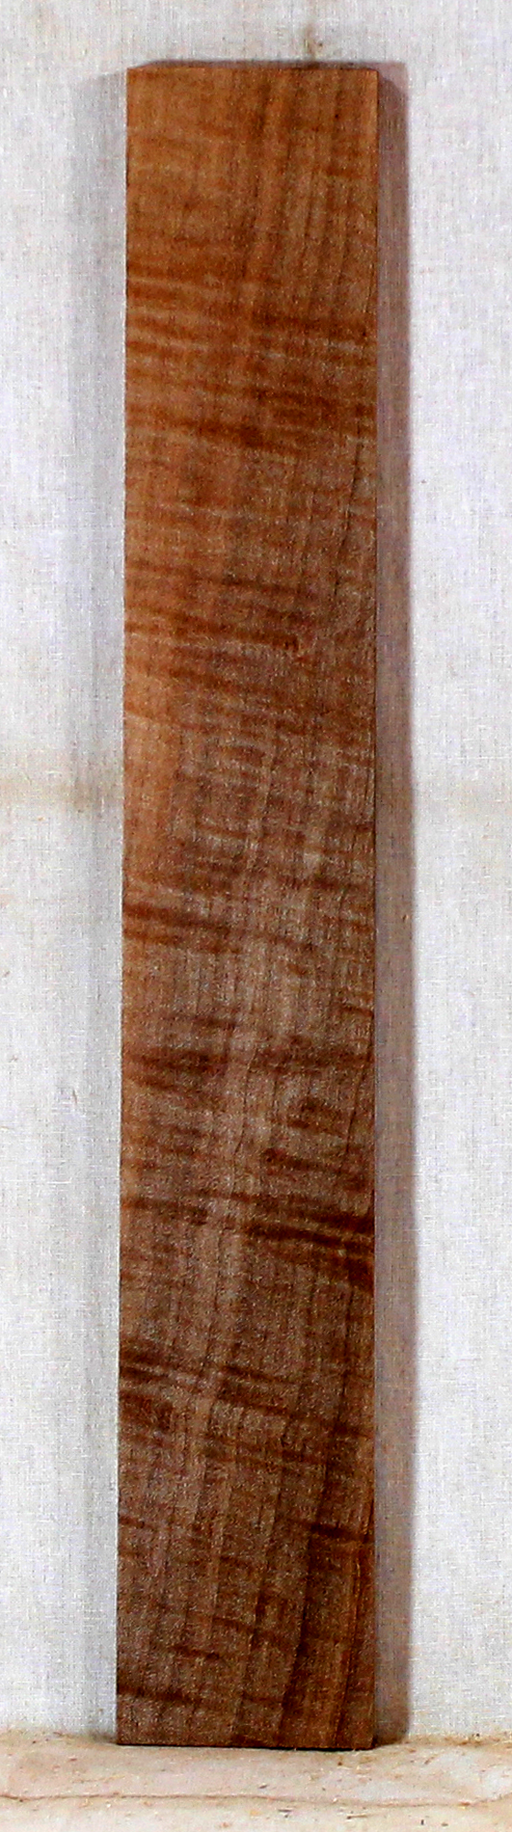 Maple Ukulele Fingerboard Stabilized (EG39)